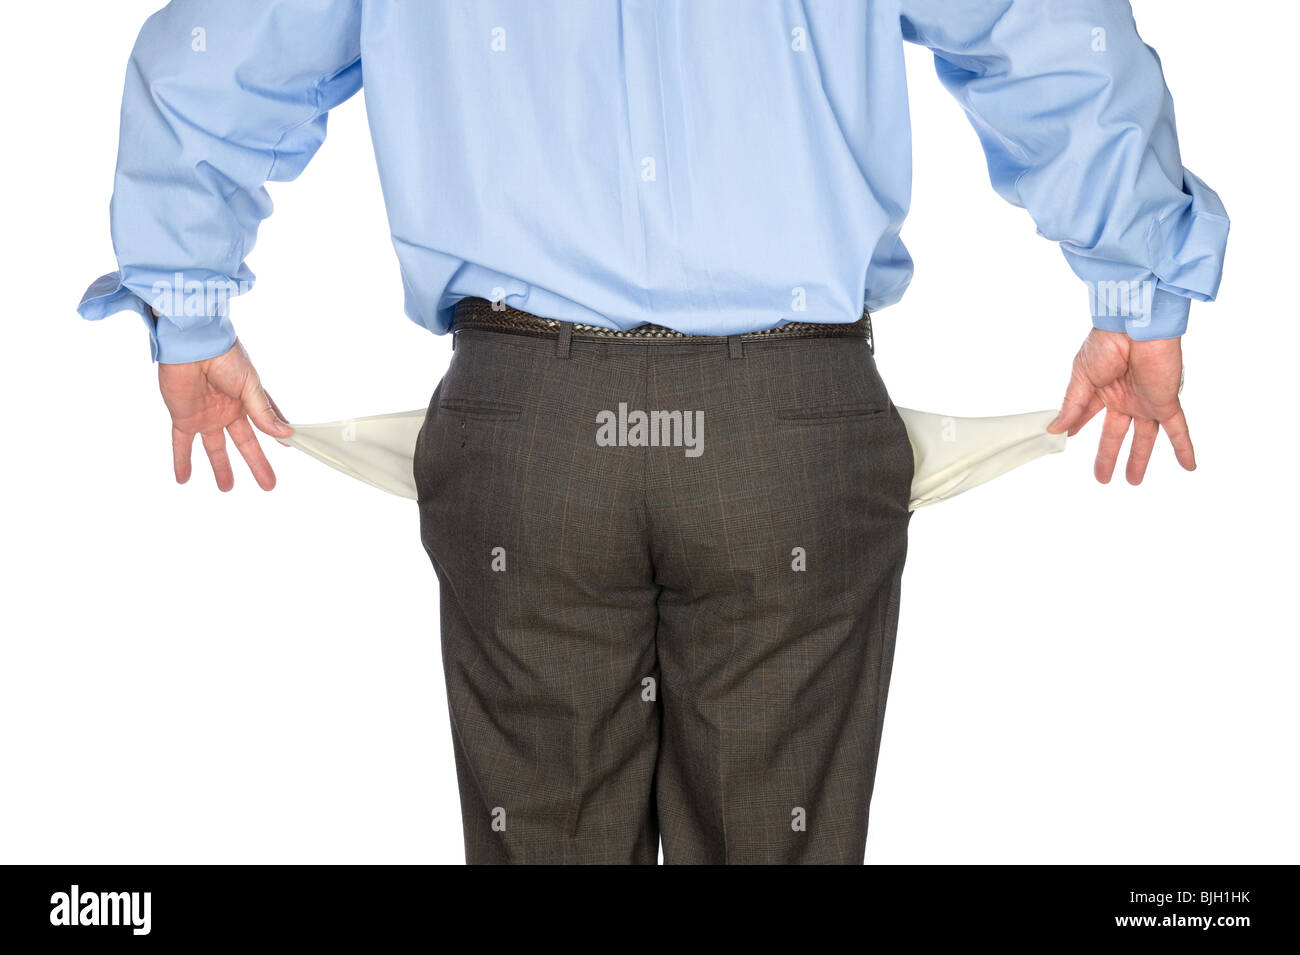 Un homme d'affaires est titulaire de ses poches vides montrant qu'il est fauché et n'a pas d'argent. Banque D'Images